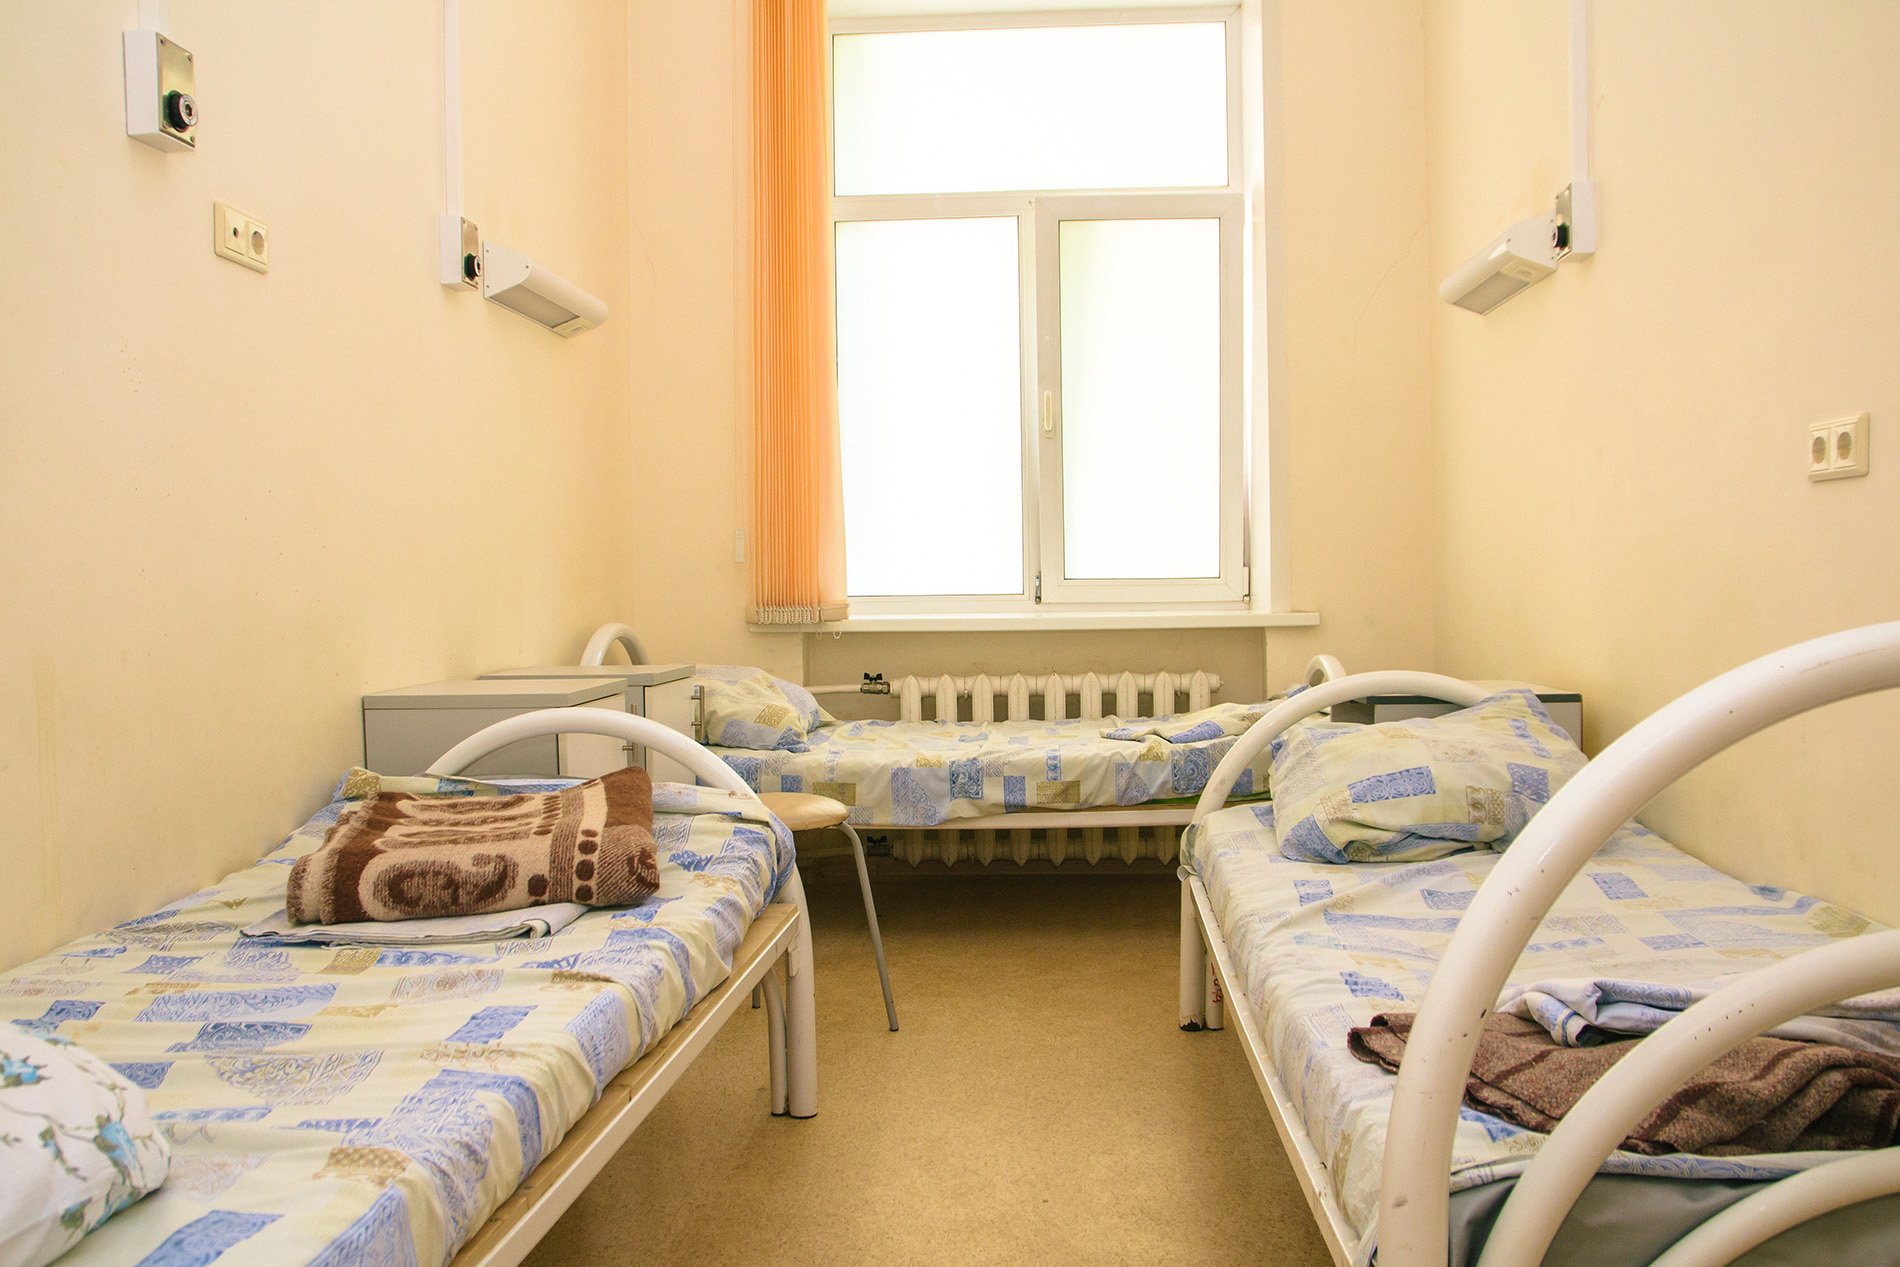 «Выписали заражать других»: отделение больницы в Челябинской области закрыли из-за коронавируса